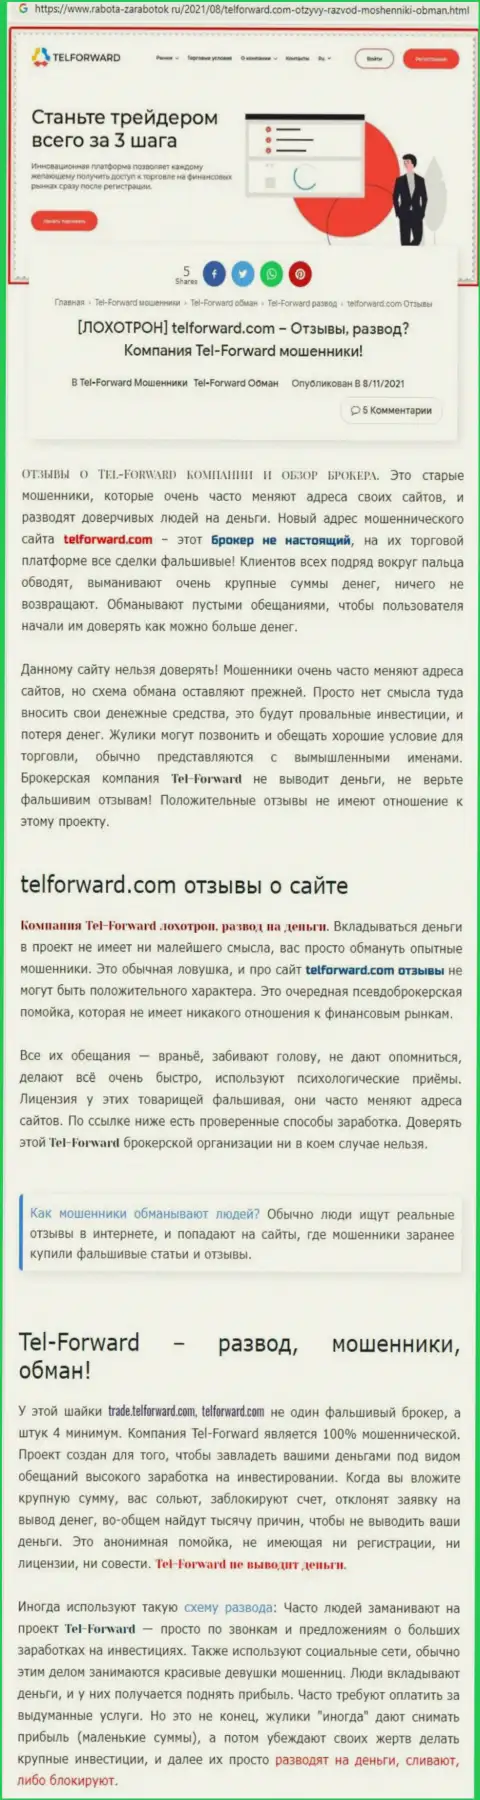 TelForward - это МОШЕННИКИ !!! Условия торгов, как ловушка для лохов - обзор